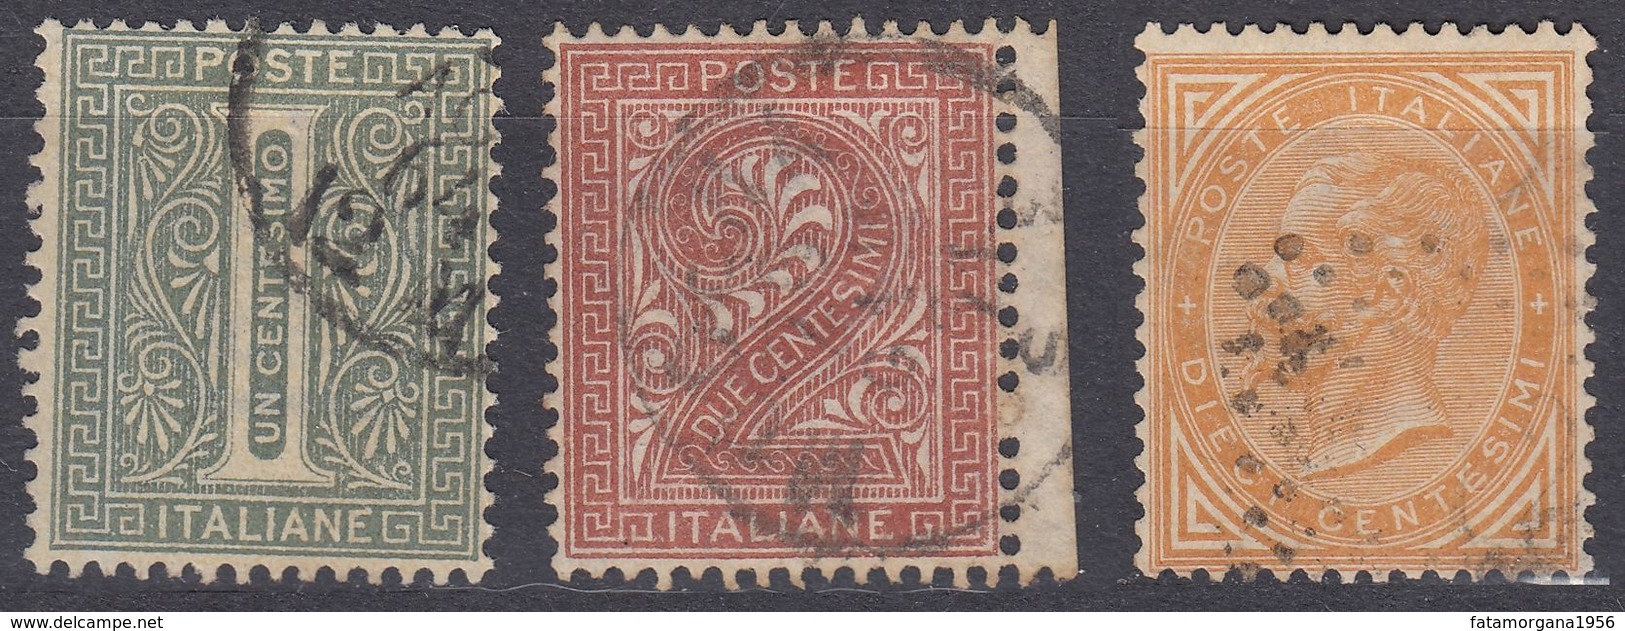 ITALIA - 1863 - Lotto Di Tre Valori Usati: Yvert 12, 13 E 15, Come Da Immagine. - Used